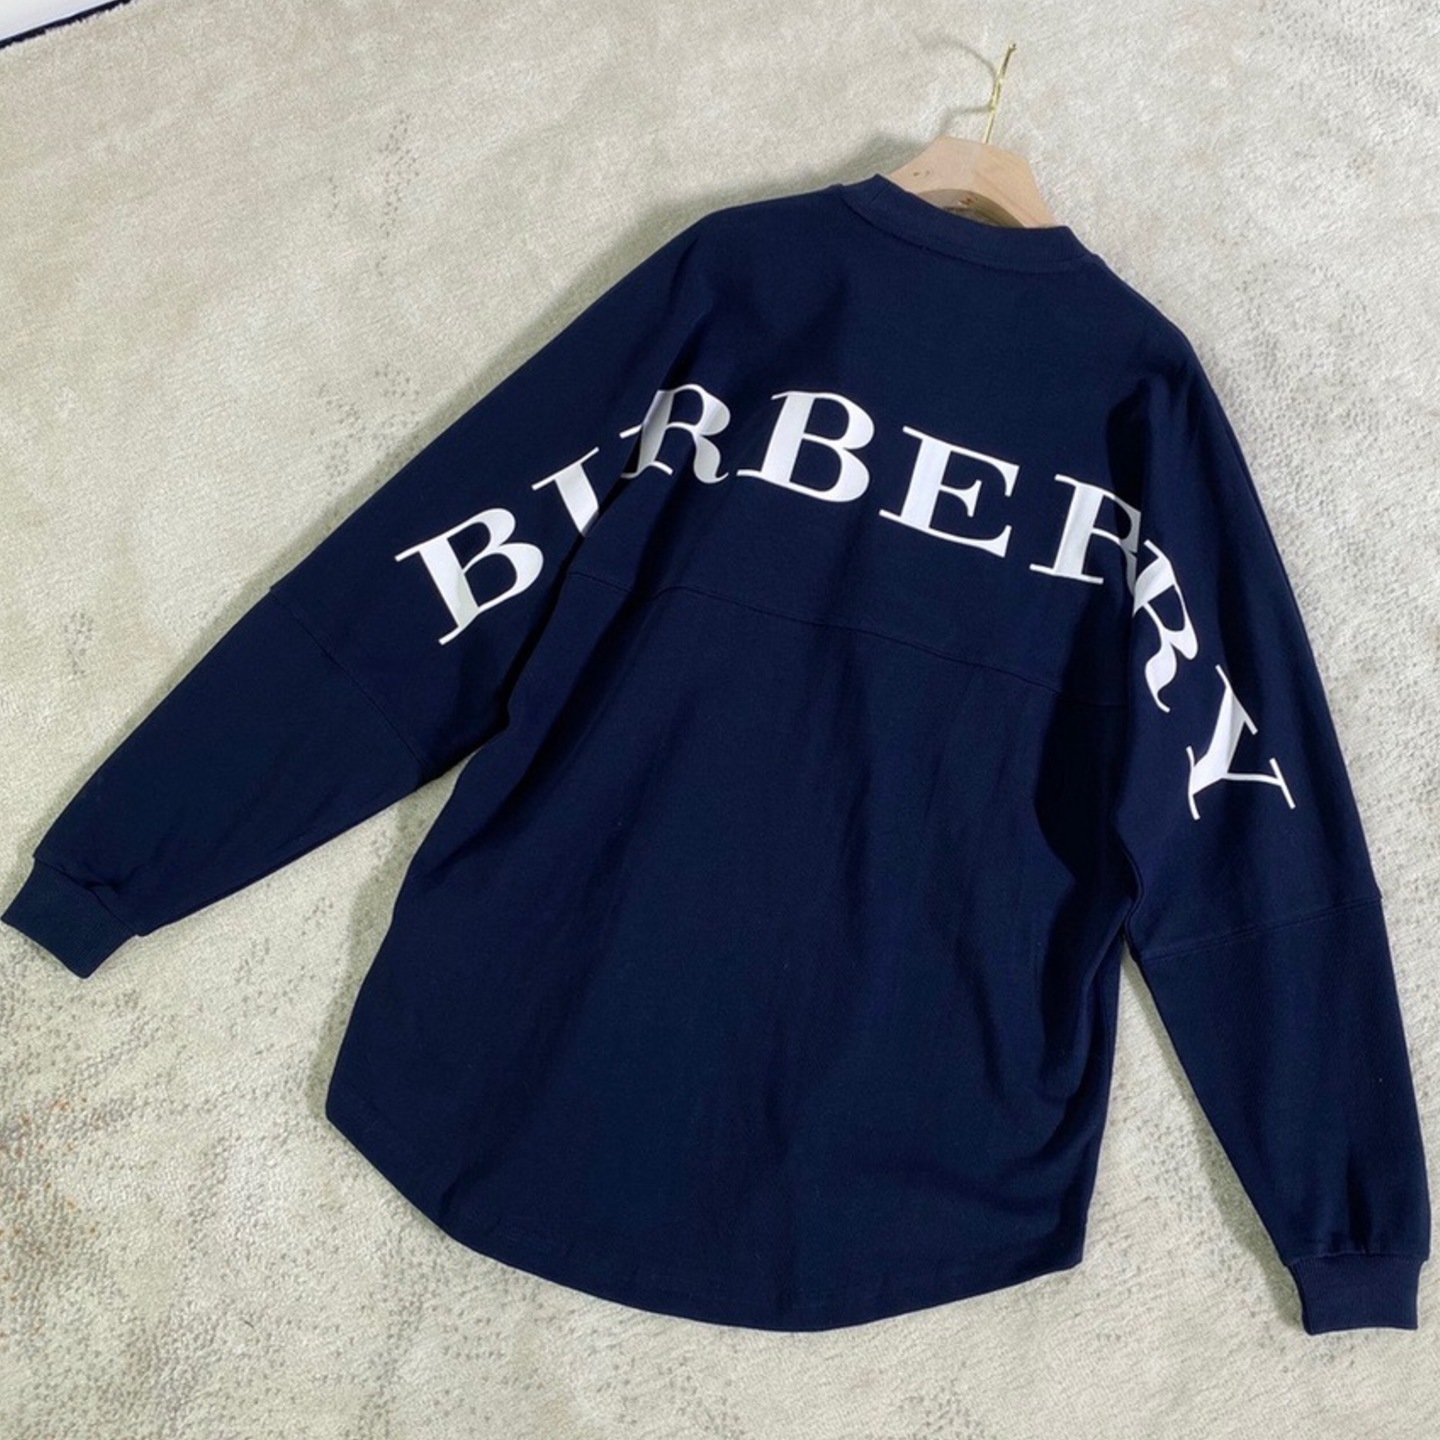 Burberry back logo sweatshirt